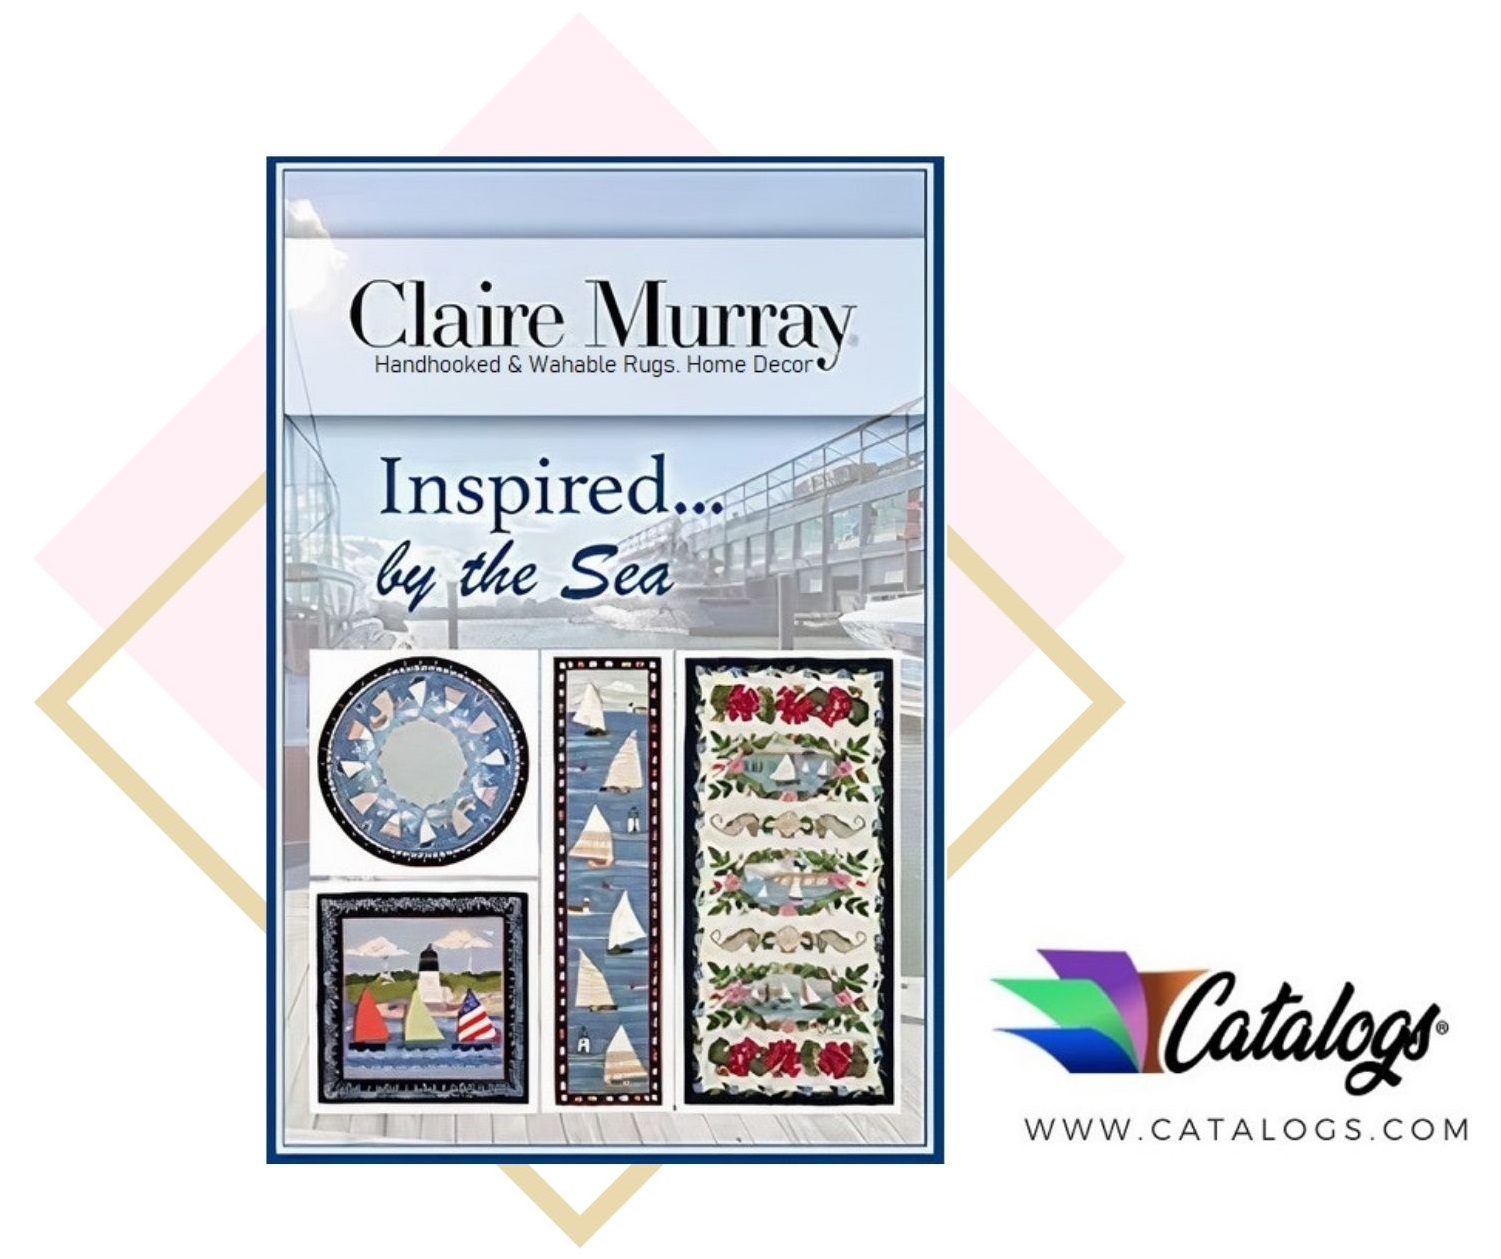 How Do I Order a Free Claire Murray Rugs & Decor Home Decorating Catalog?